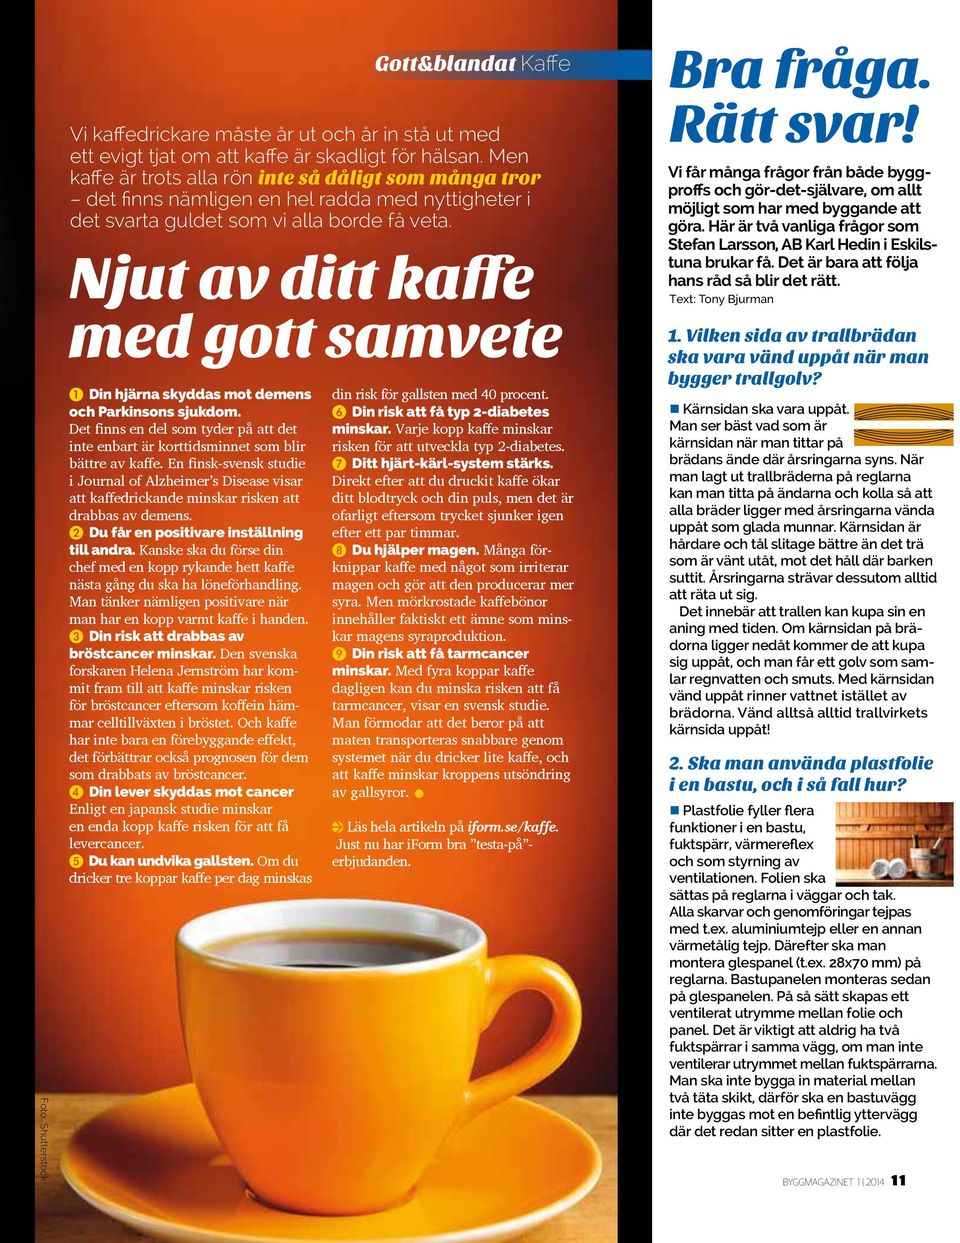 En finsk-svensk studie i Journal of Alzheimer s Disease visar att kaffedrickande minskar risken att drabbas av demens. 2 Du får en positivare inställning till andra.